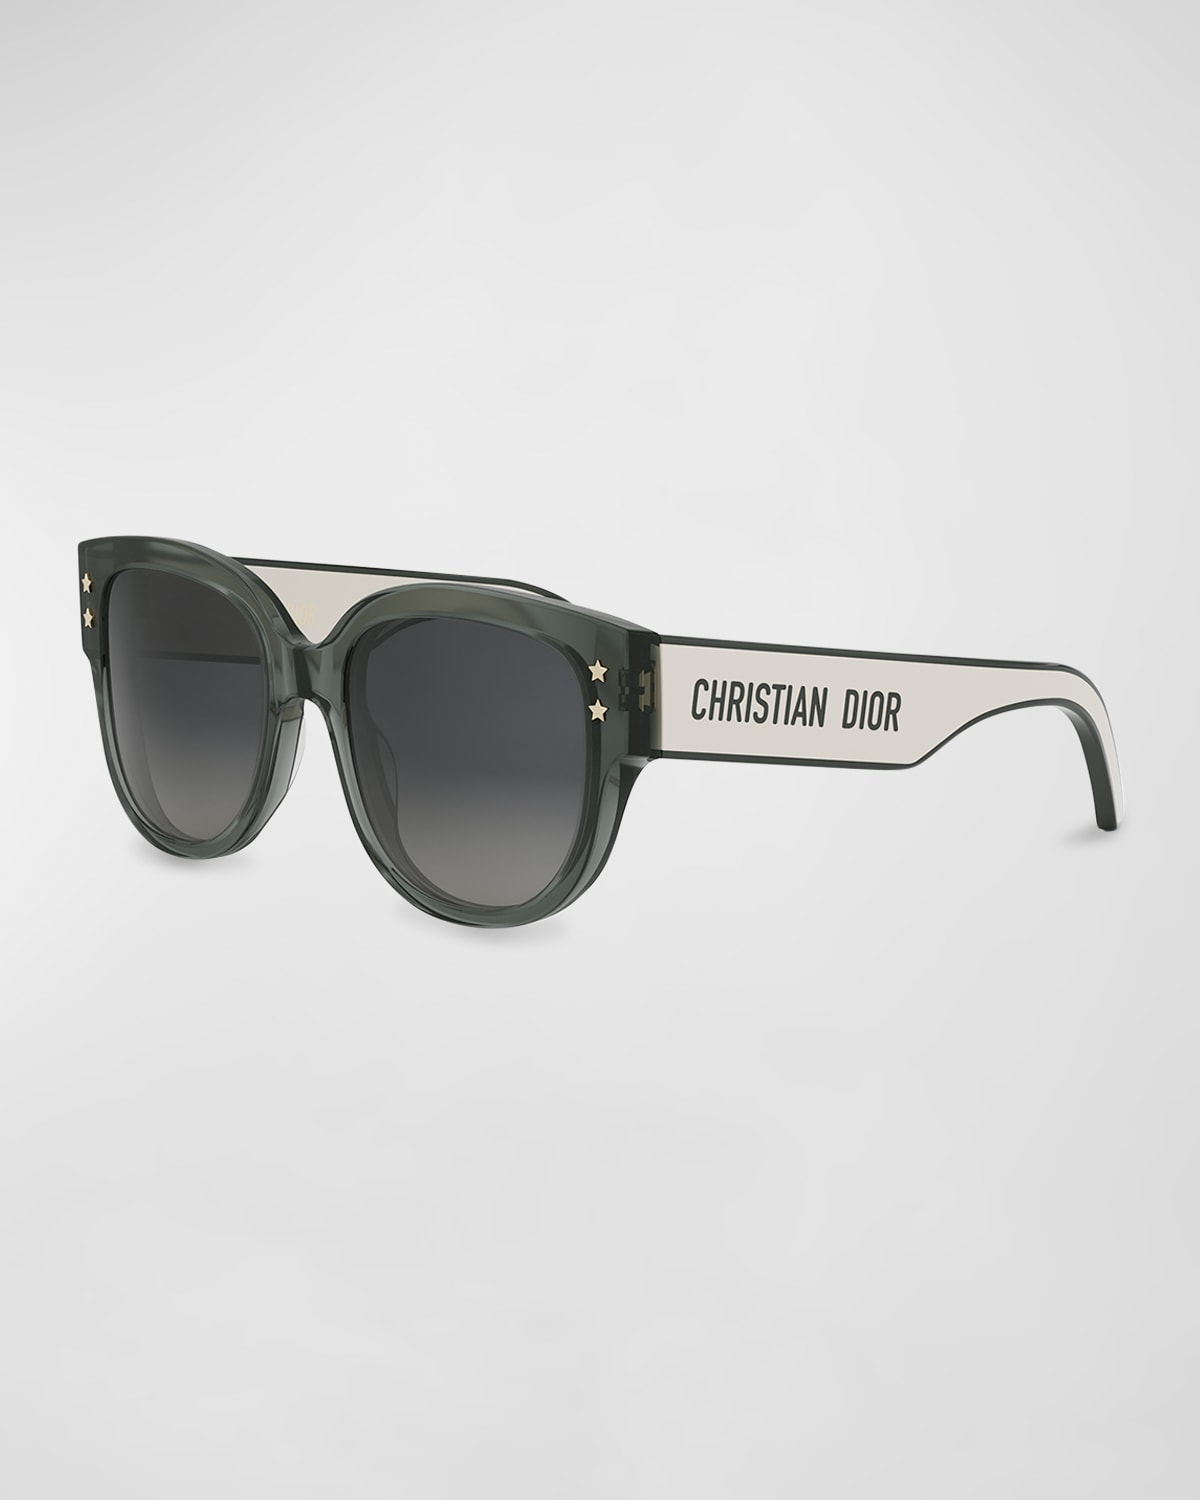 Dior Pacific B2i Sunglasses In Dark Green Smoke Gradient